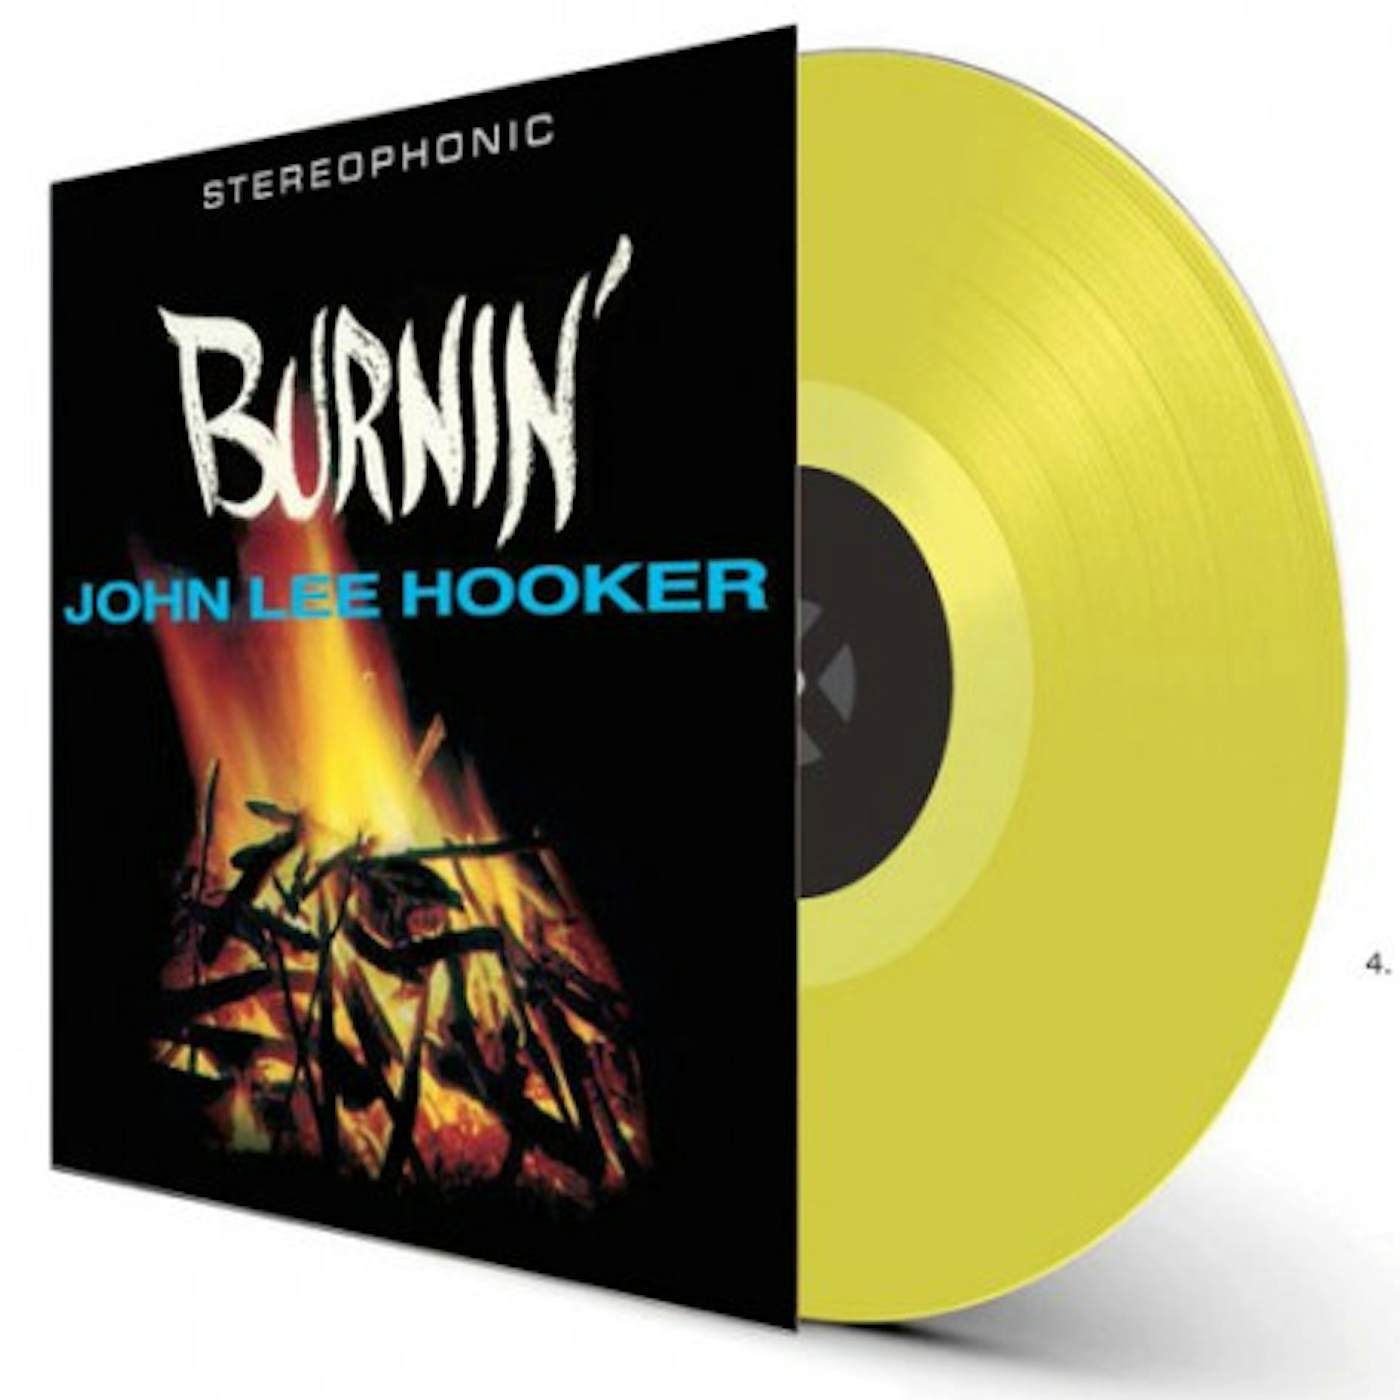 John Lee Hooker BURNIN - Yellow Vinyl Record, 180 Gram Pressing, Spain Release